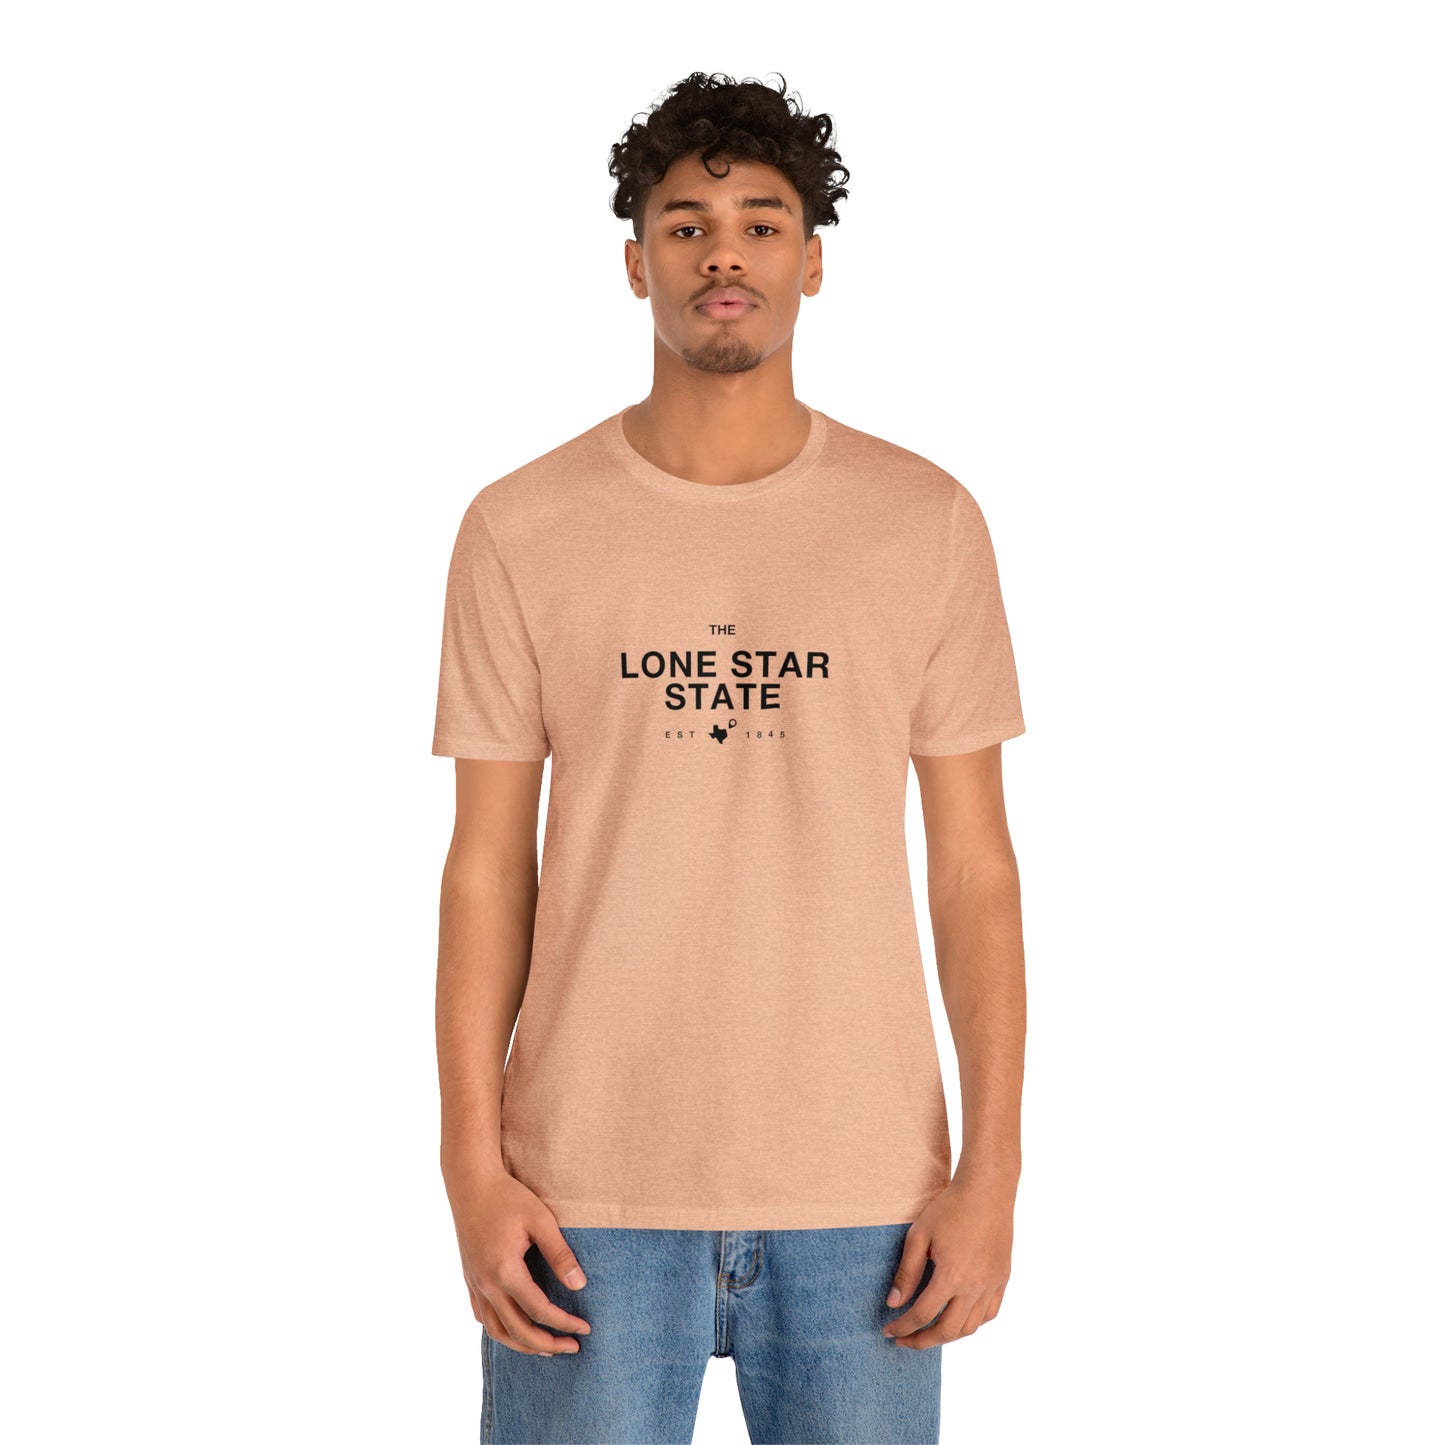 Texas Nickname Shirt